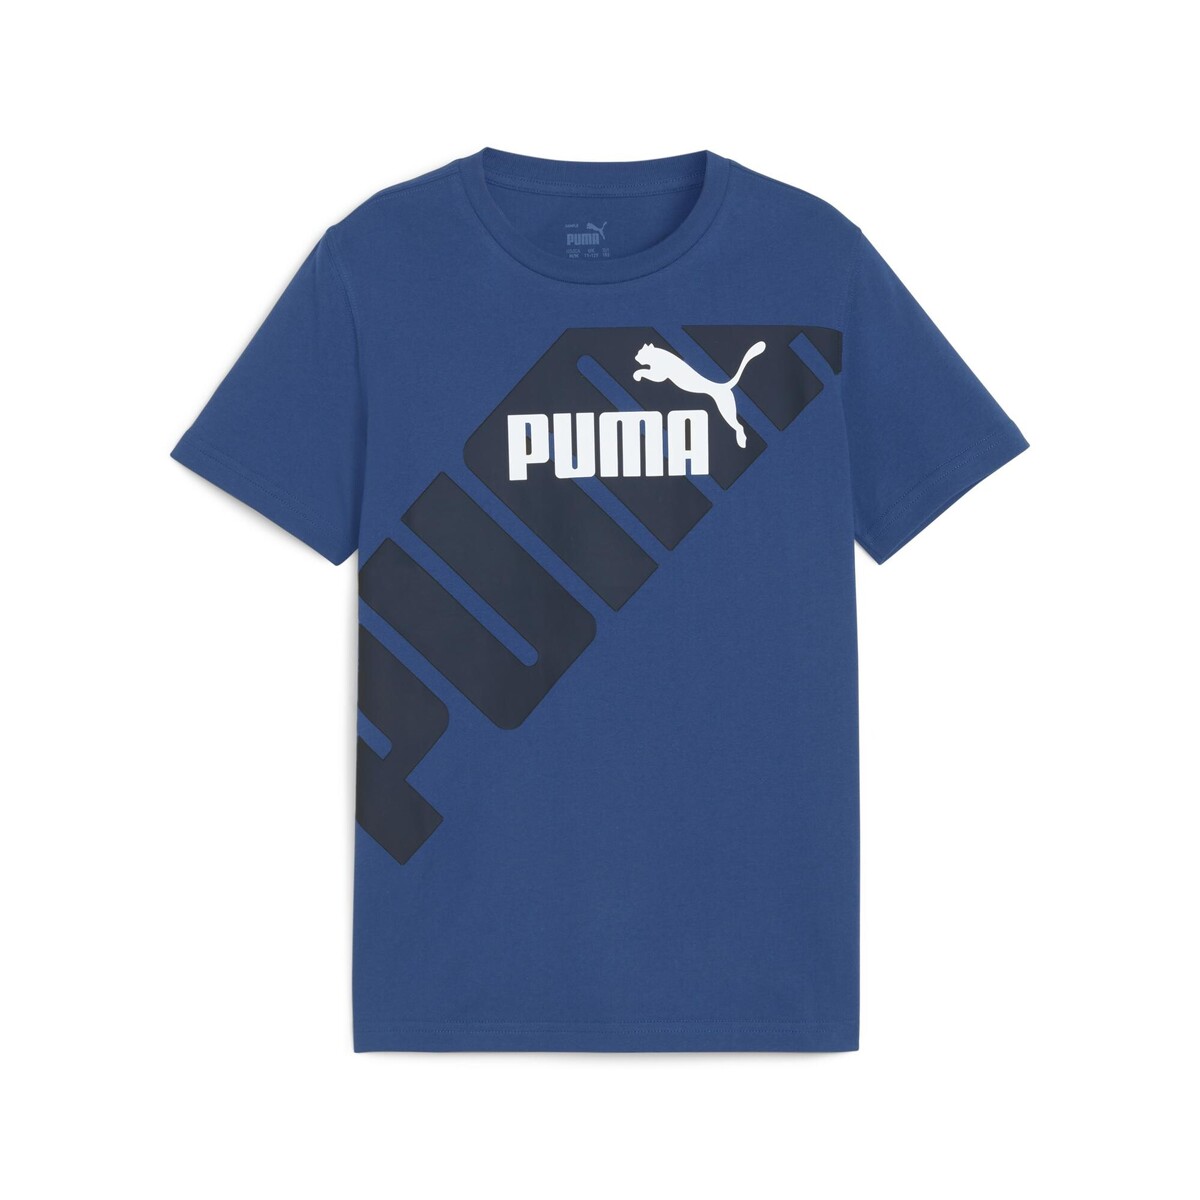 Puma Bleu PUMA POWER GRAPHIC TEE B 22rgVlLR